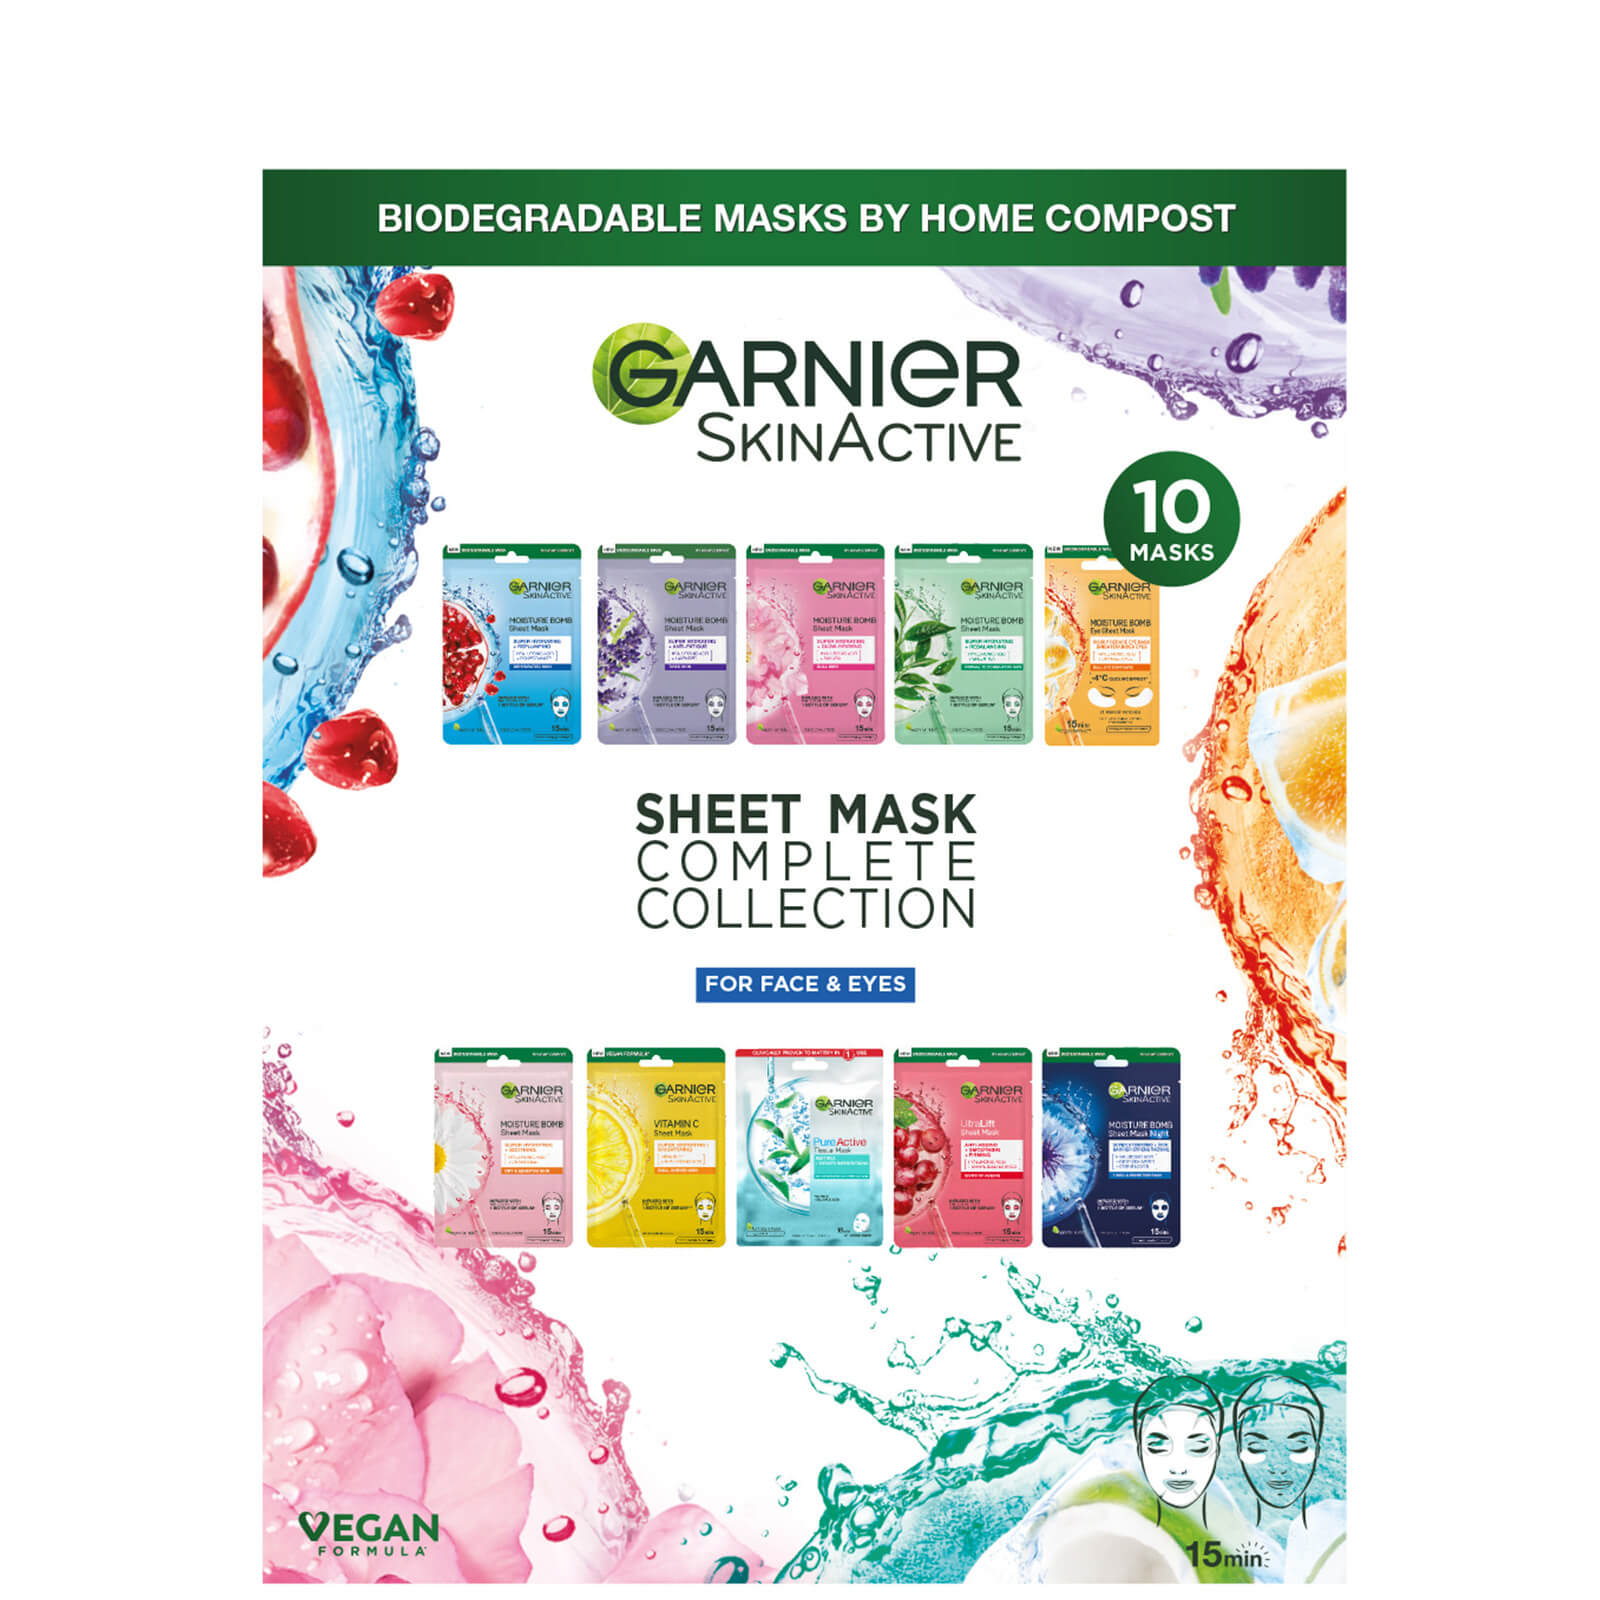 Garnier SkinActive Sheet Masks Complete Collection lookfantastic.com imagine